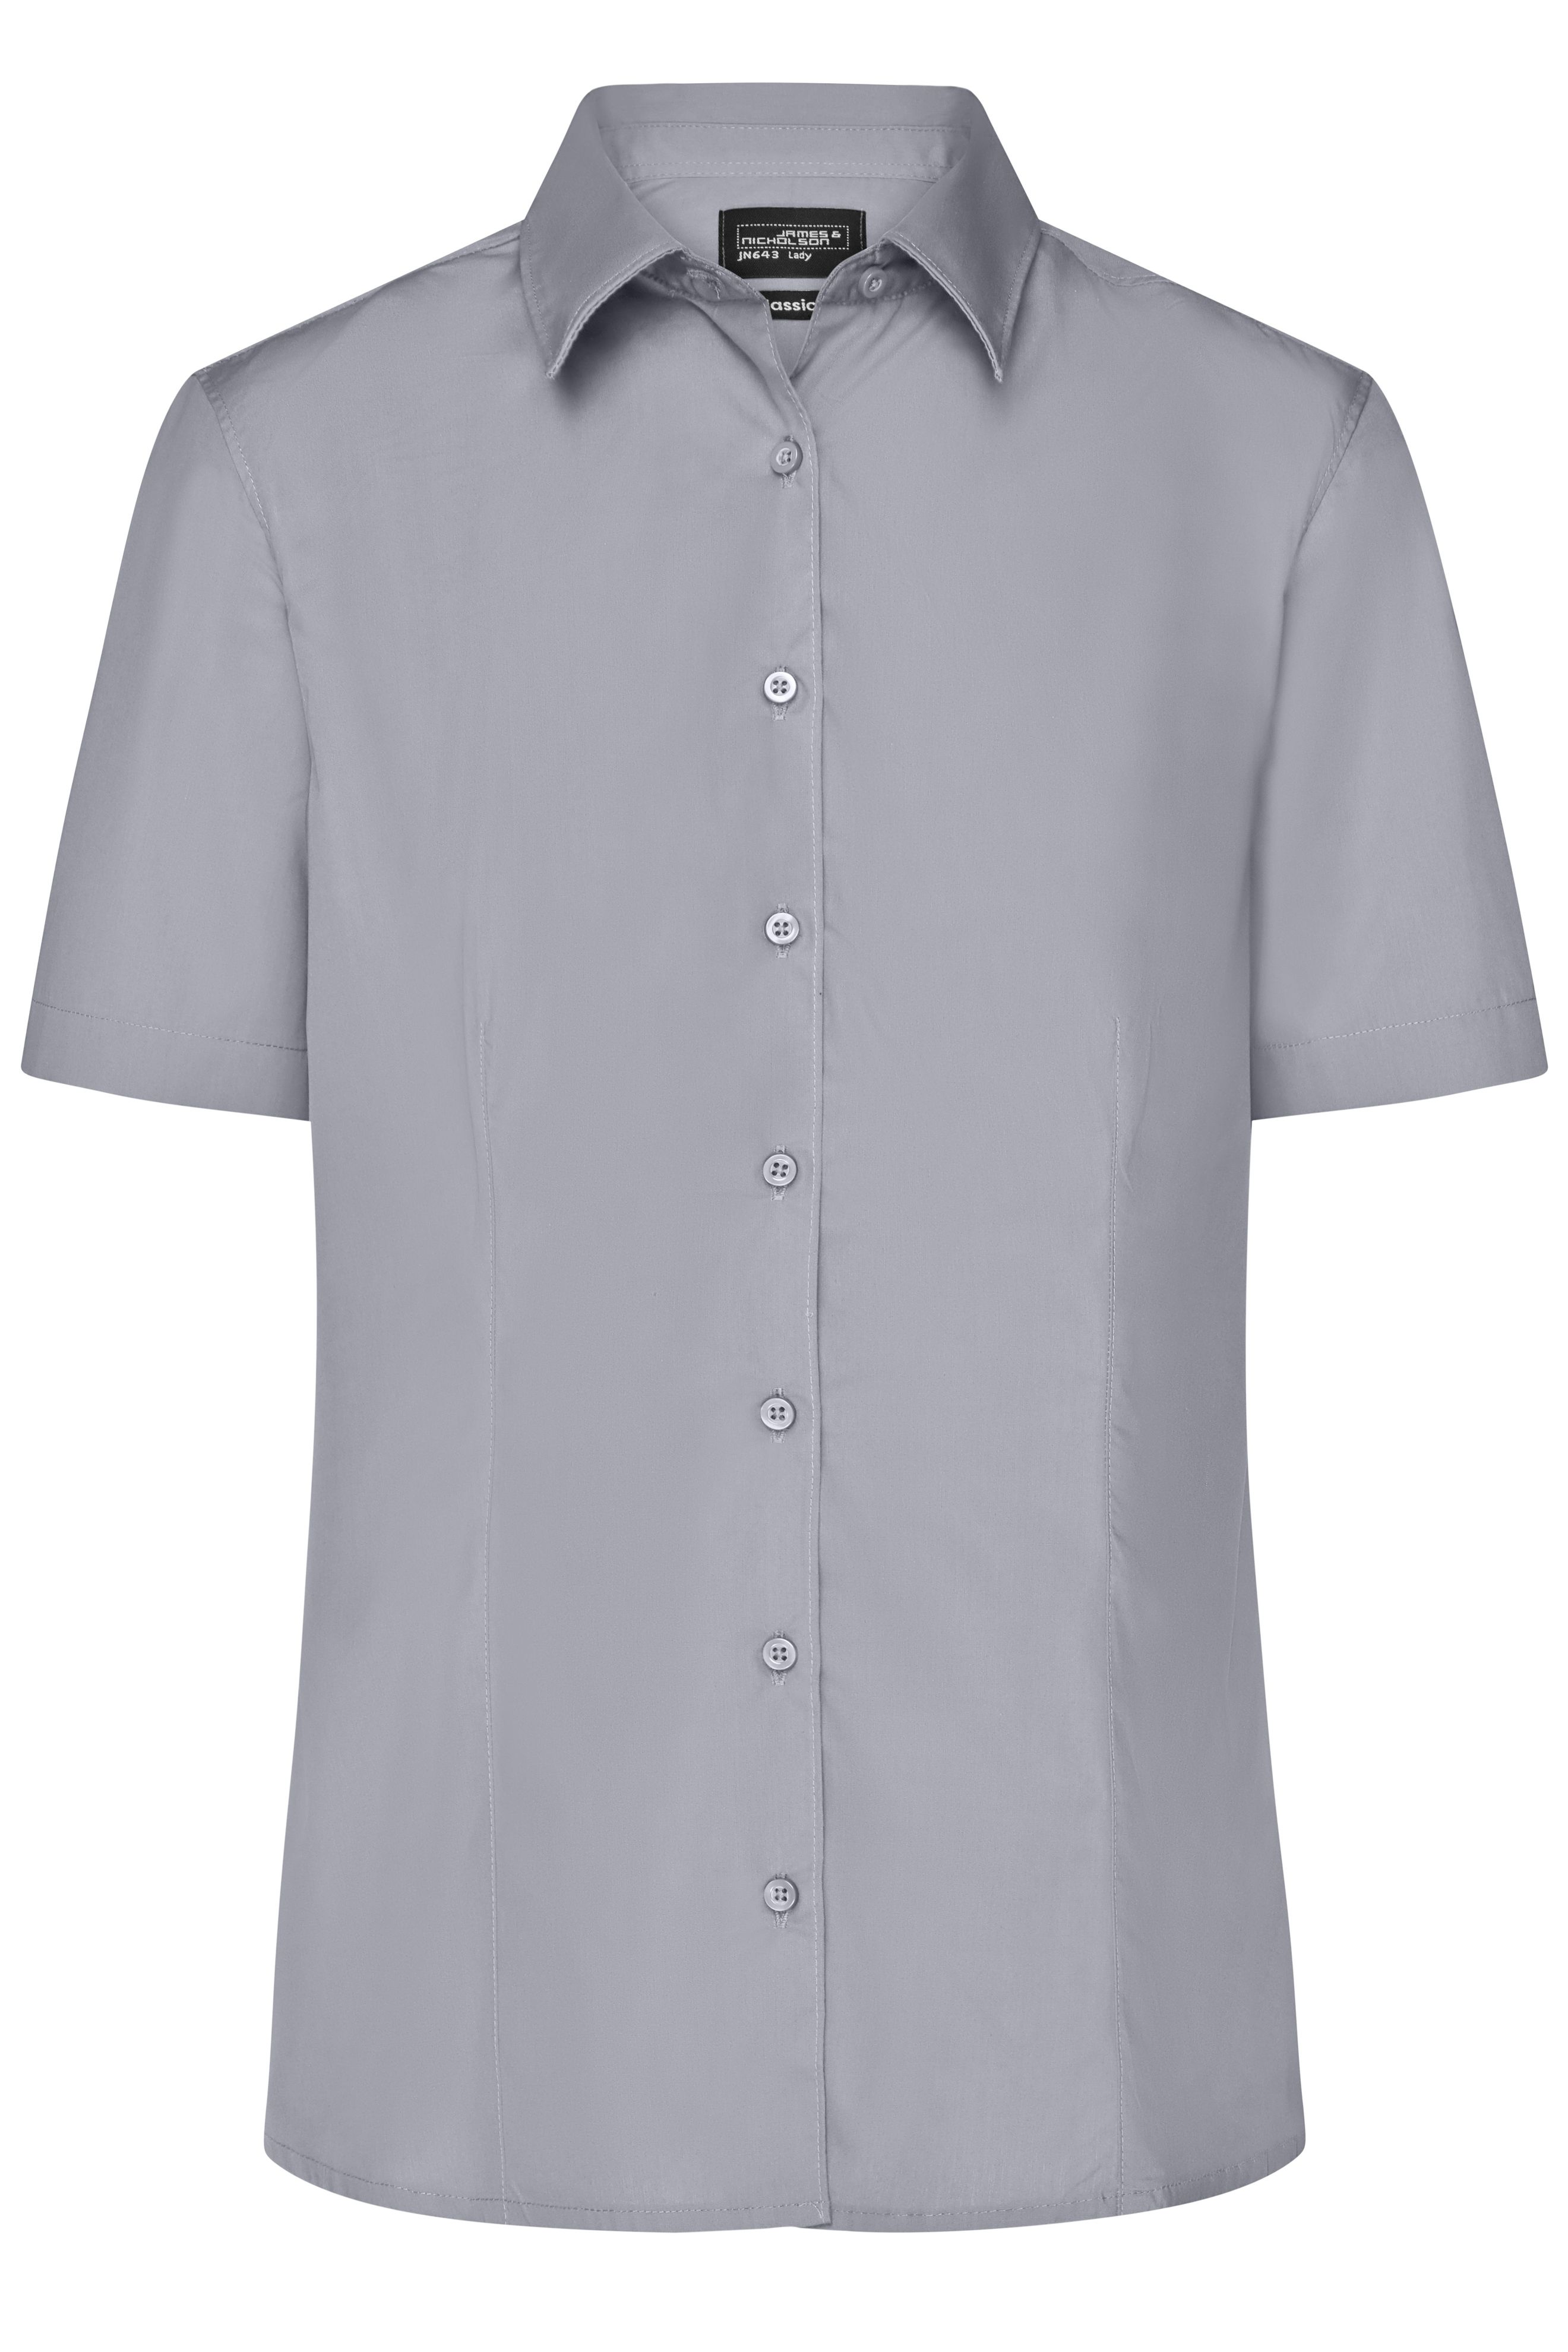 Ladies' Business Shirt Short-Sleeved JN643 Klassisches Shirt aus strapazierfähigem Mischgewebe